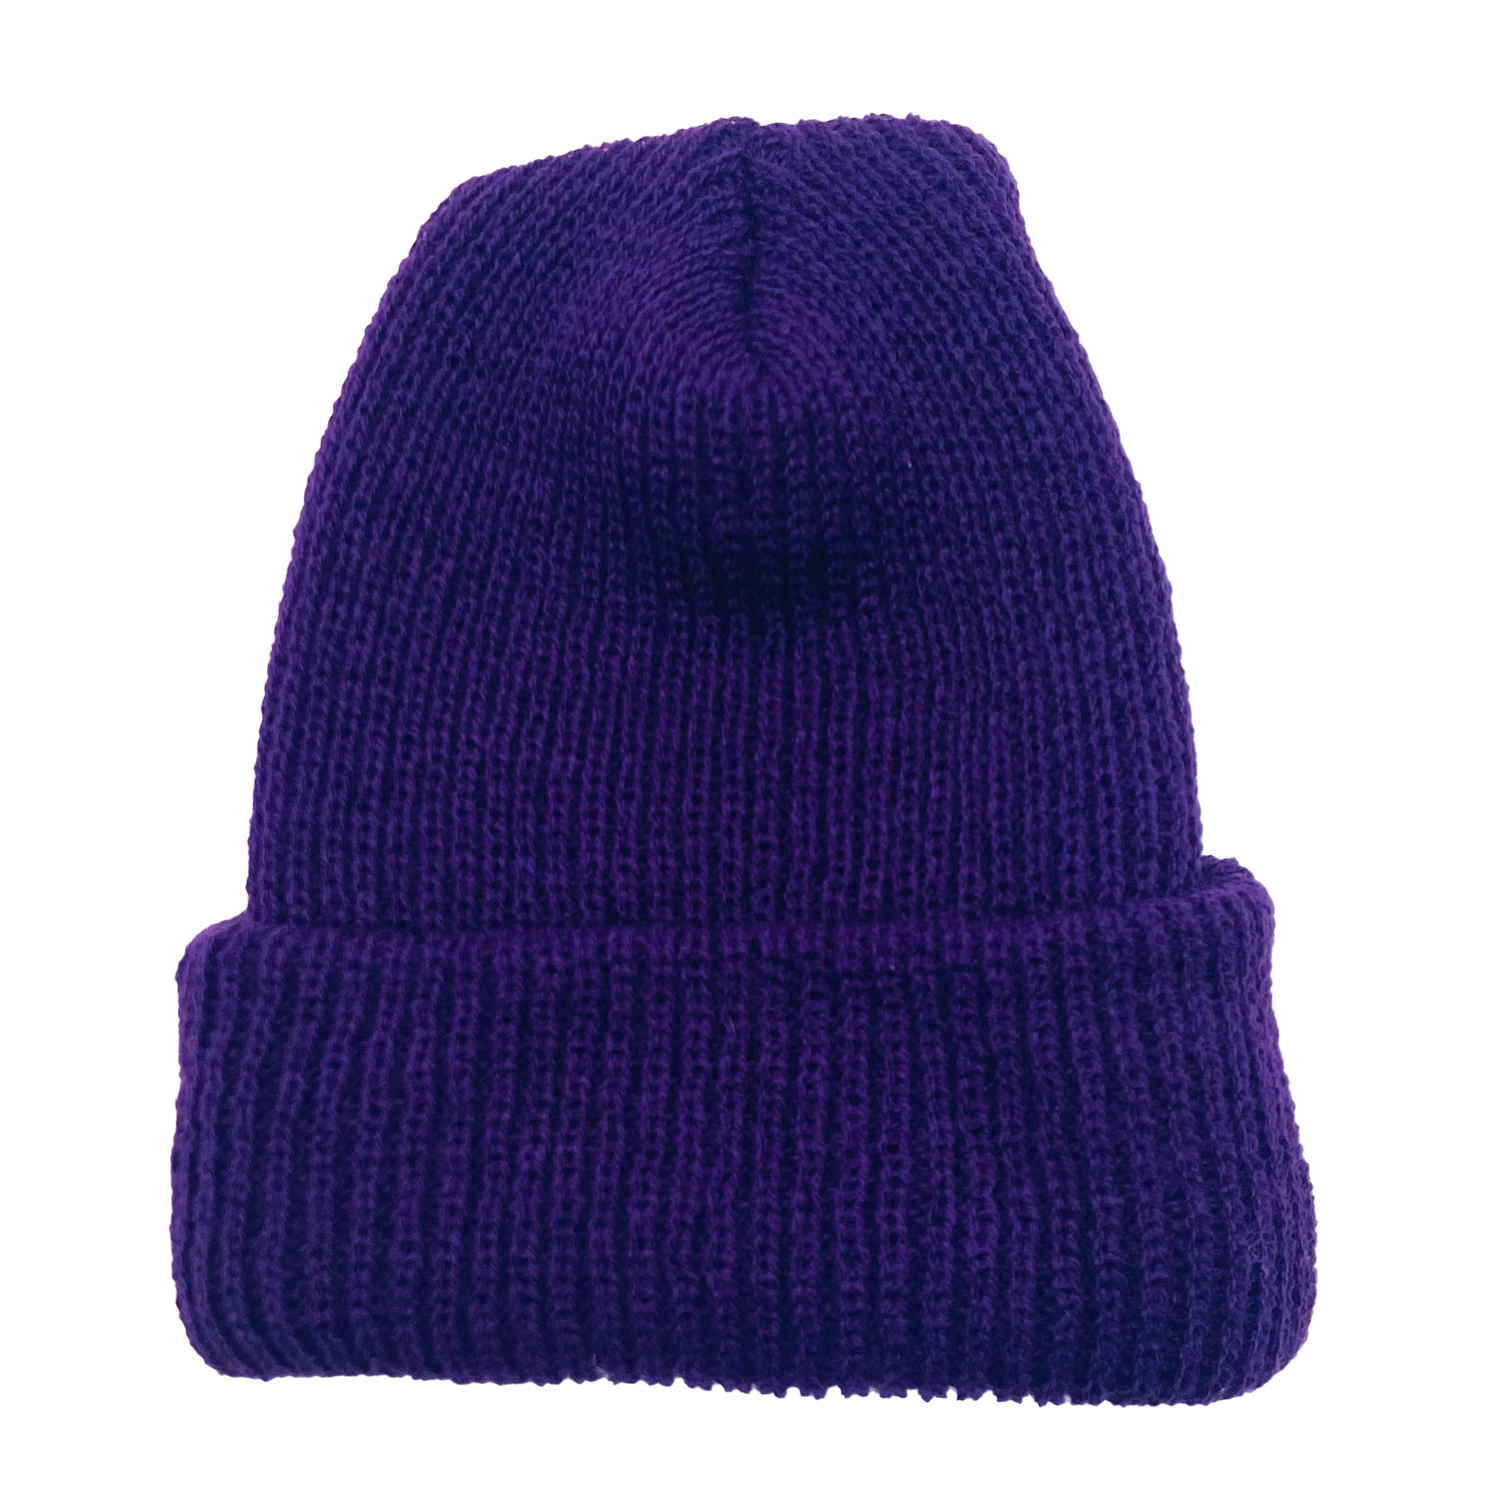 Stocking cap in purple.